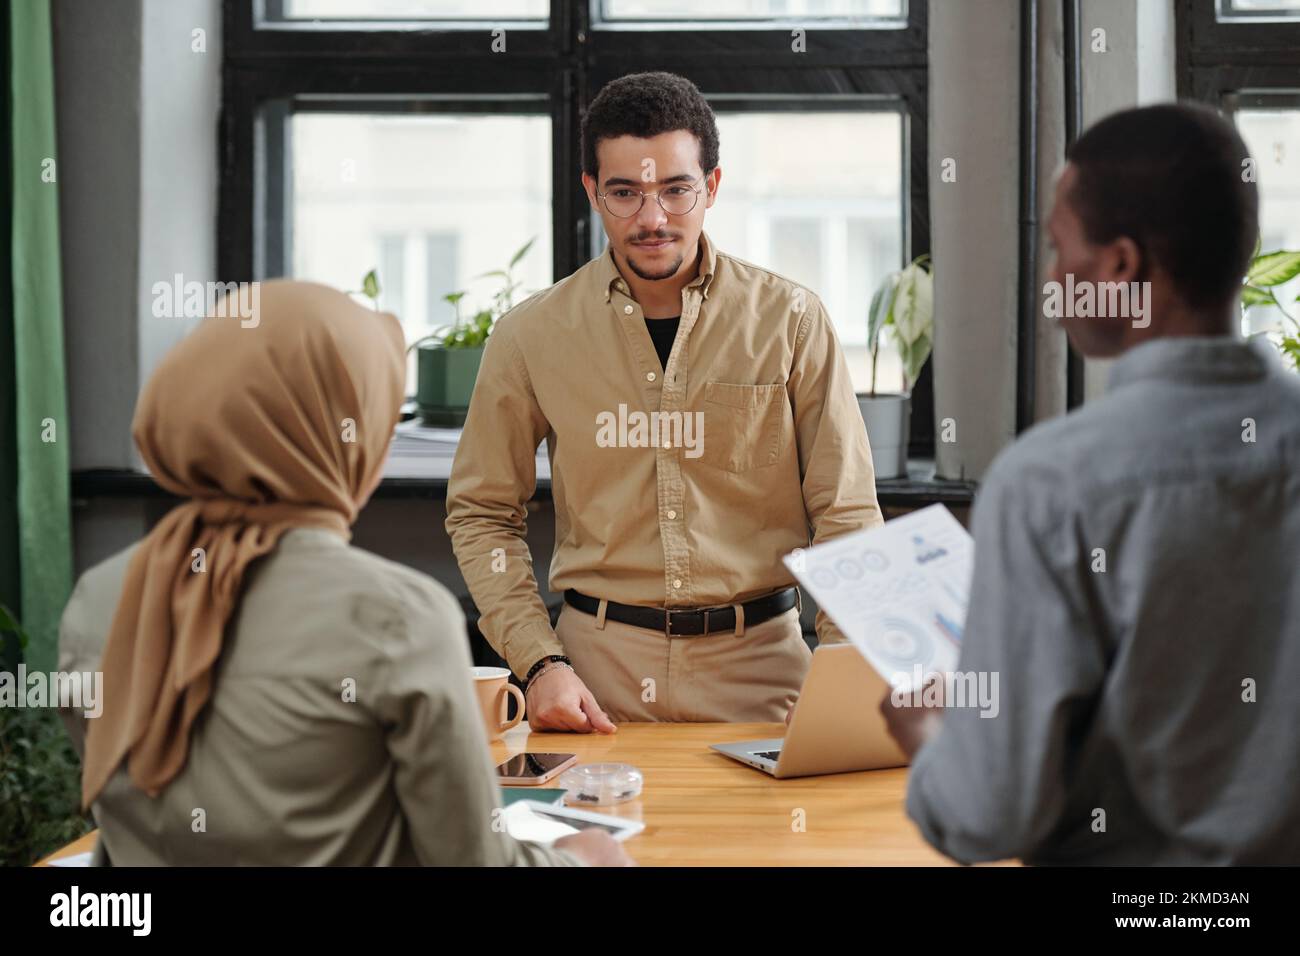 Junge, ernste Managerin, die sich Berichte über eine muslimische Untergebene anhört, während sie bei der Besprechung vor zwei interkulturellen Mitarbeitern steht Stockfoto